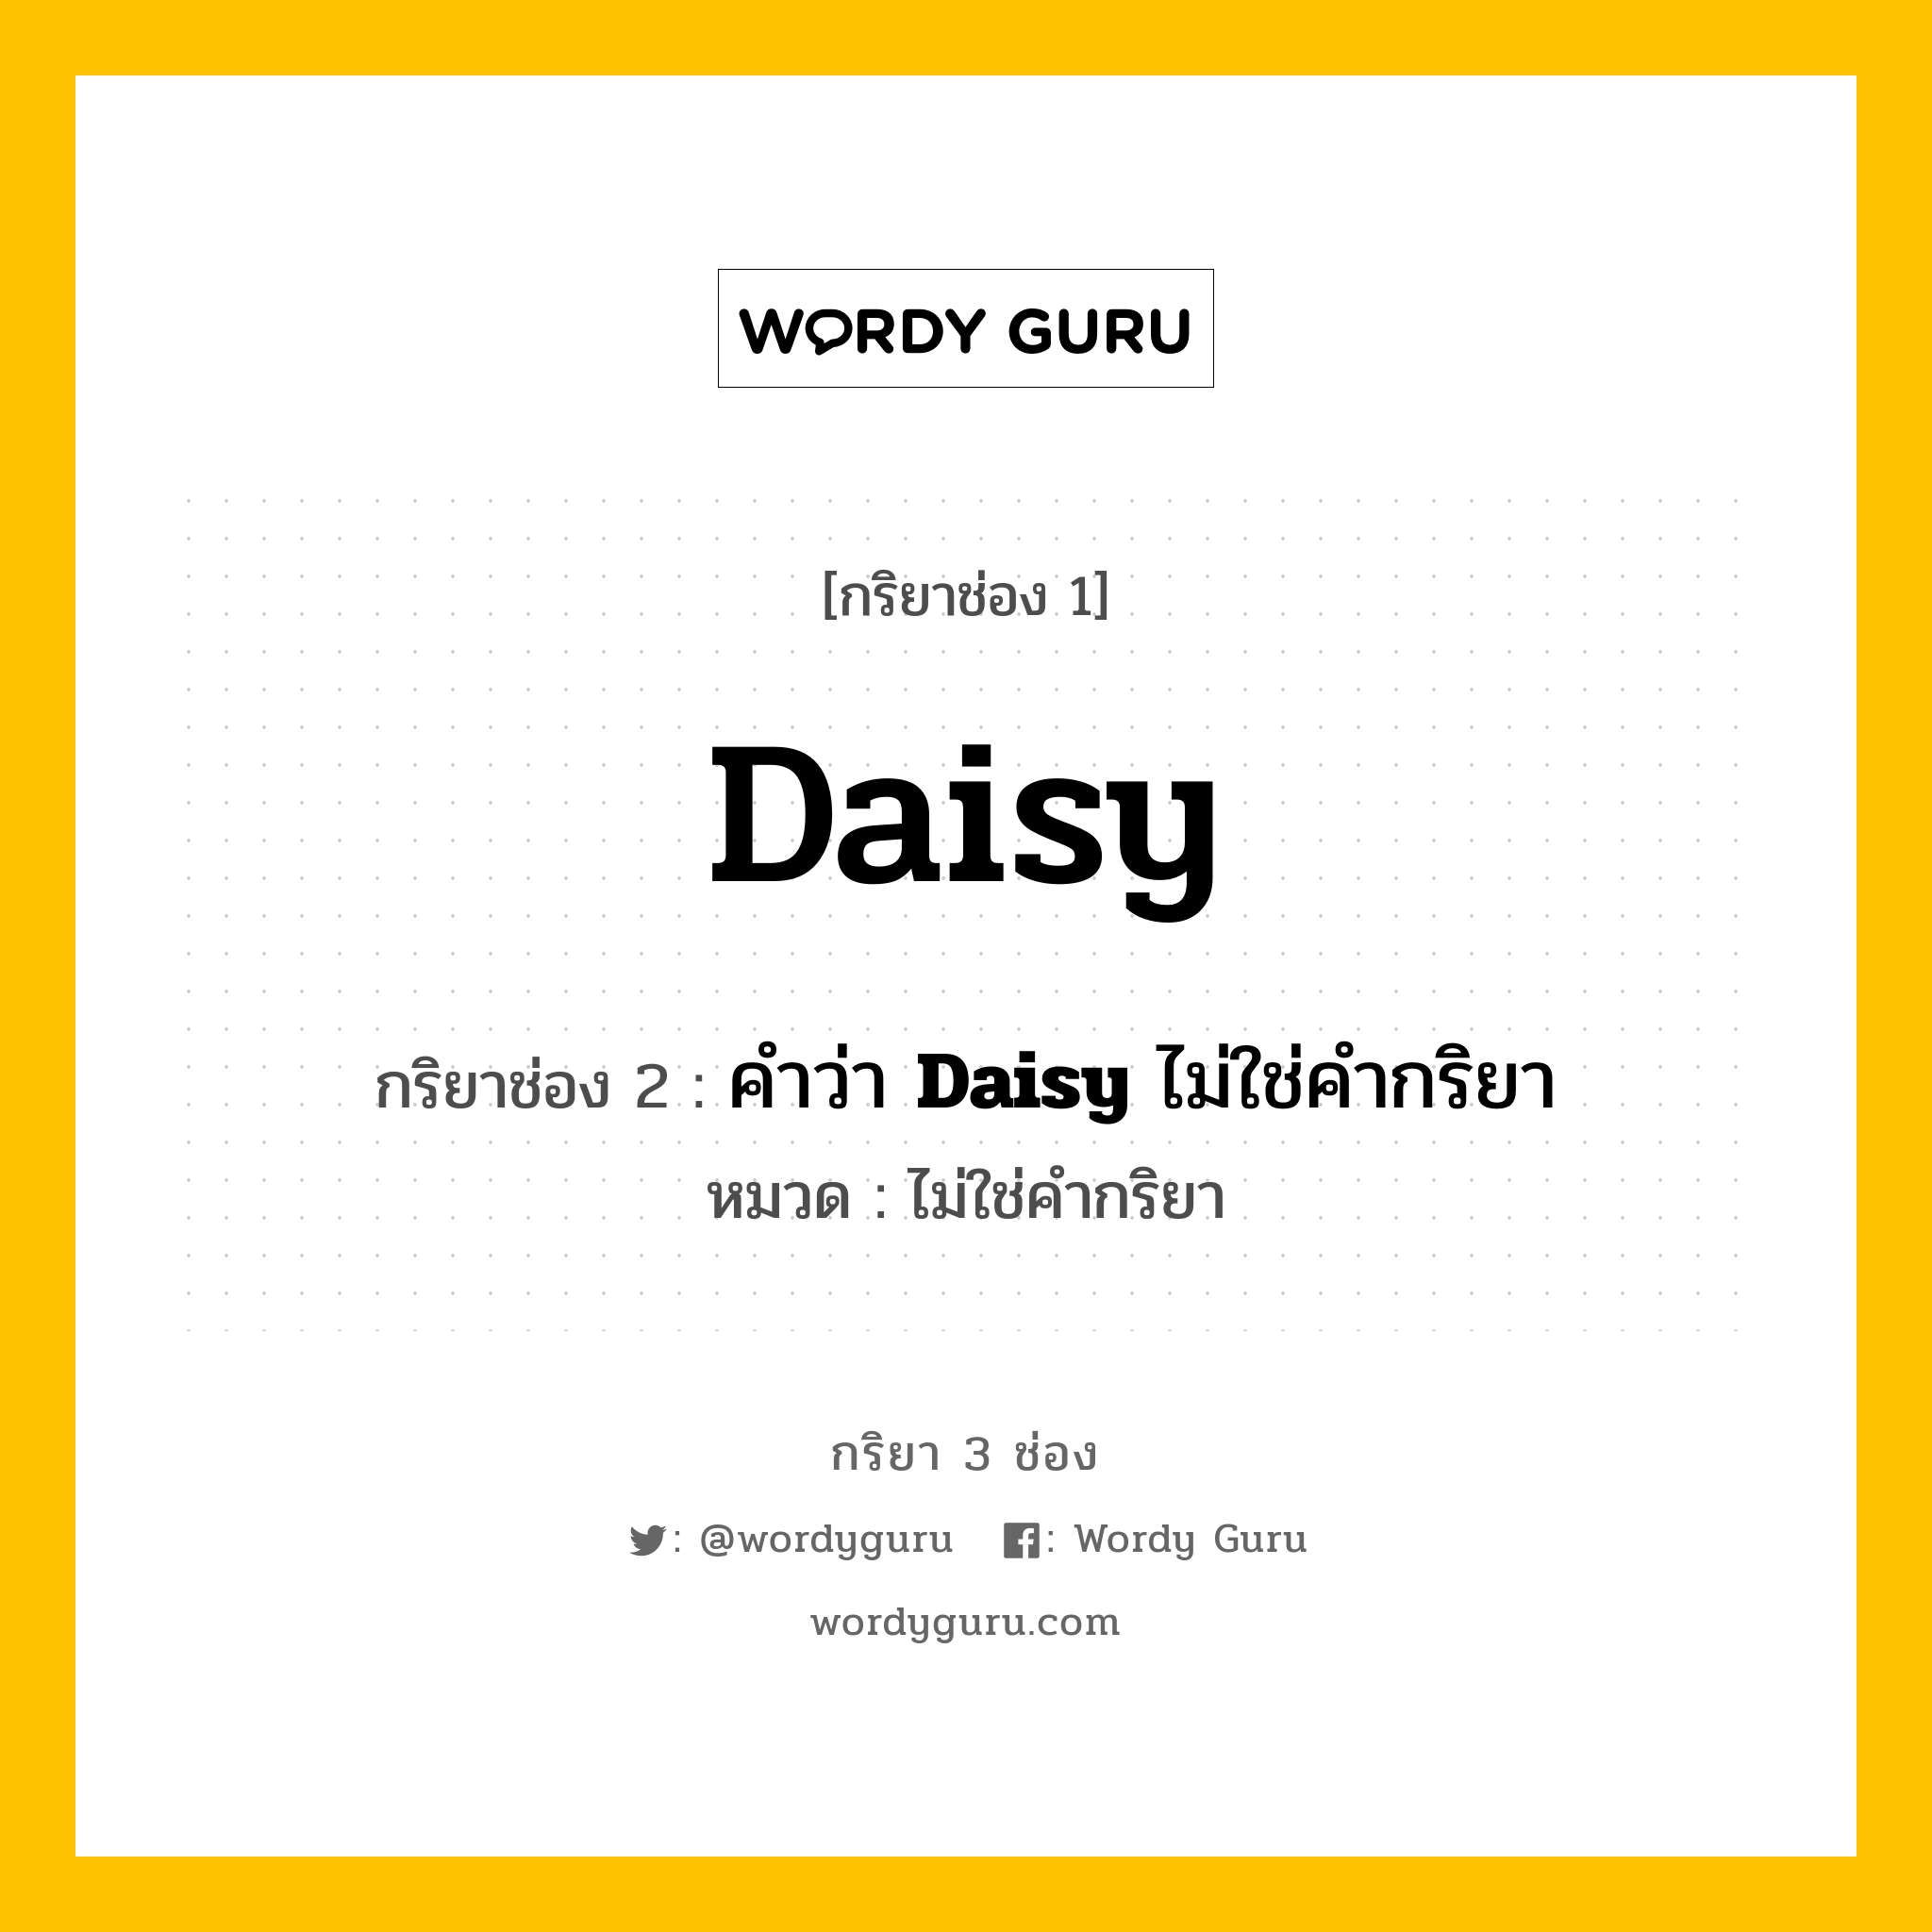 กริยา 3 ช่อง: Daisy ช่อง 2 Daisy ช่อง 3 คืออะไร, กริยาช่อง 1 Daisy กริยาช่อง 2 คำว่า <b>Daisy</b> ไม่ใช่คำกริยา หมวด ไม่ใช่คำกริยา หมวด ไม่ใช่คำกริยา